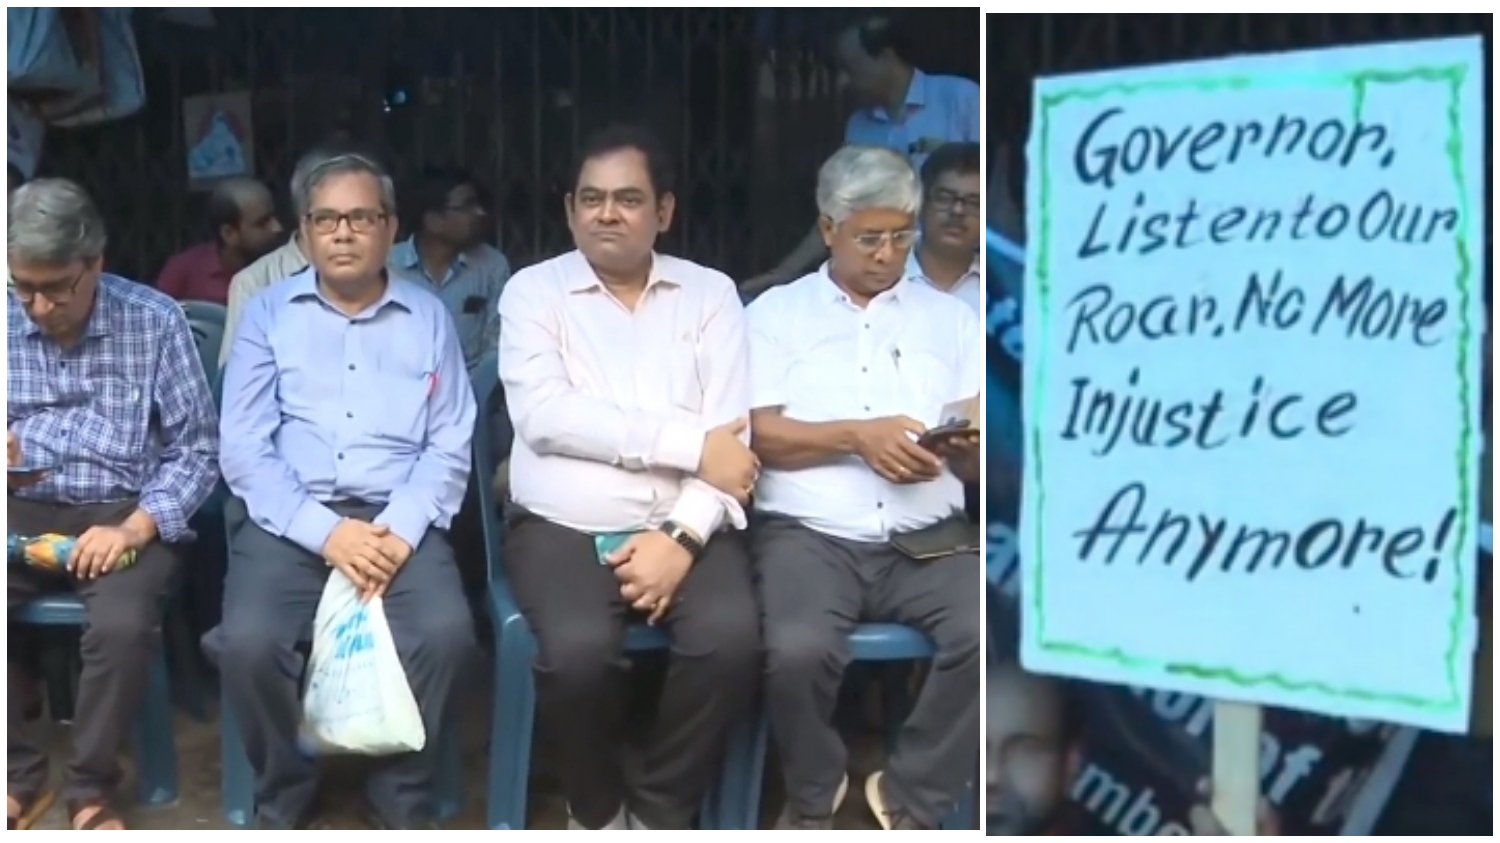 VC Protest: উচ্চশিক্ষায় অরাজকতার অভিযোগ! রাজভবনের সামনে ধরনা-বিক্ষোভে প্রাক্তন উপাচার্যরা